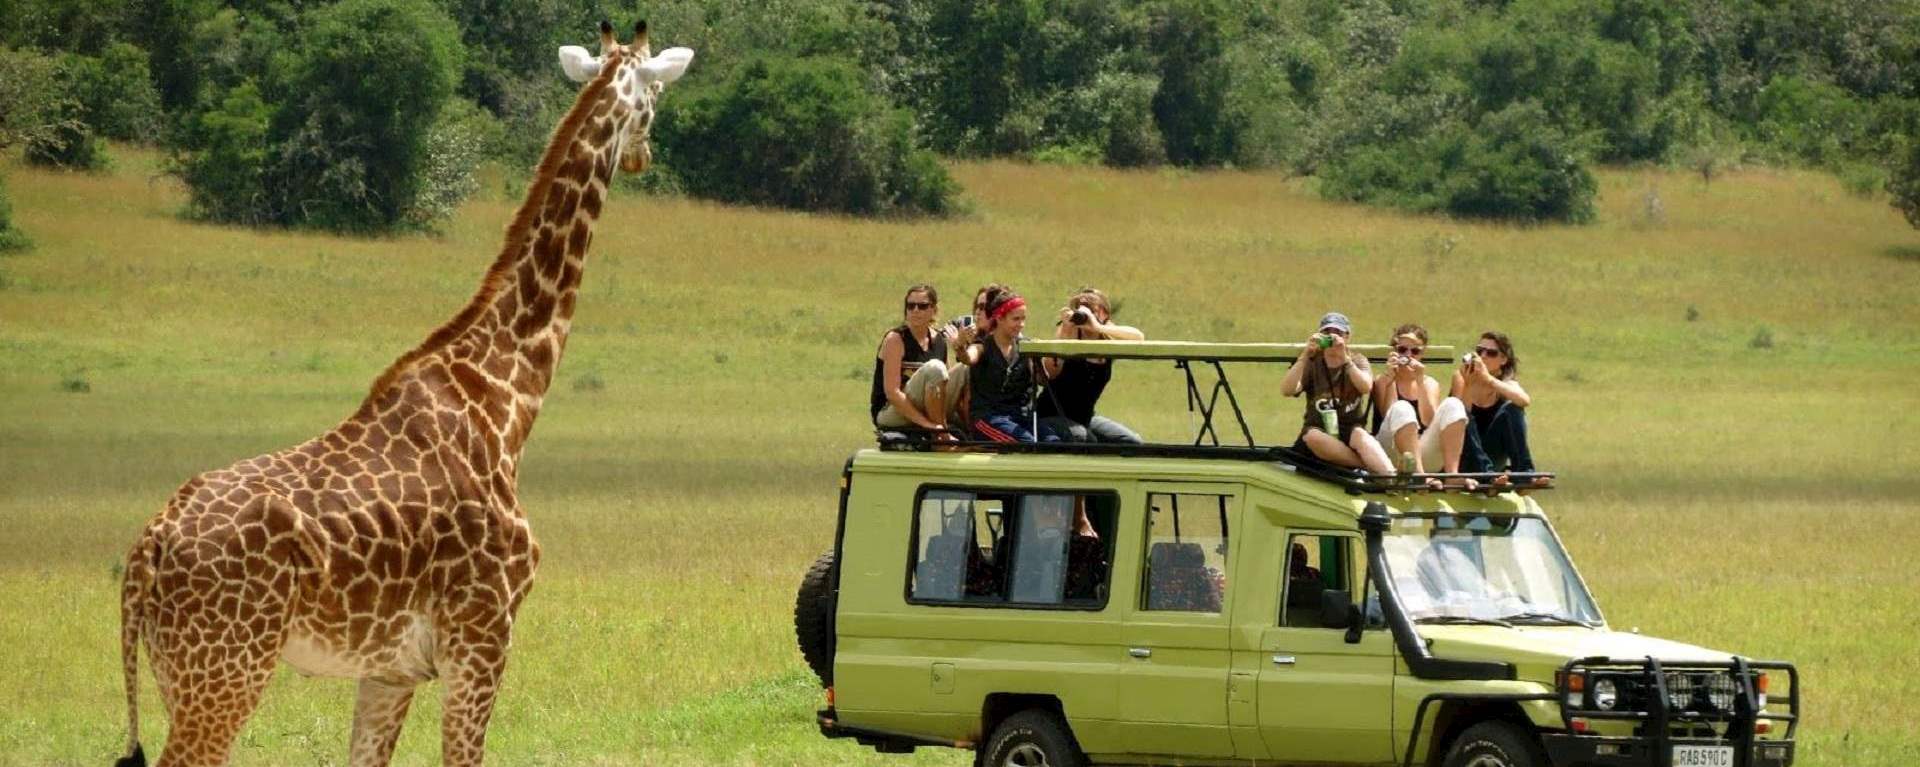 tips for tanzania safari